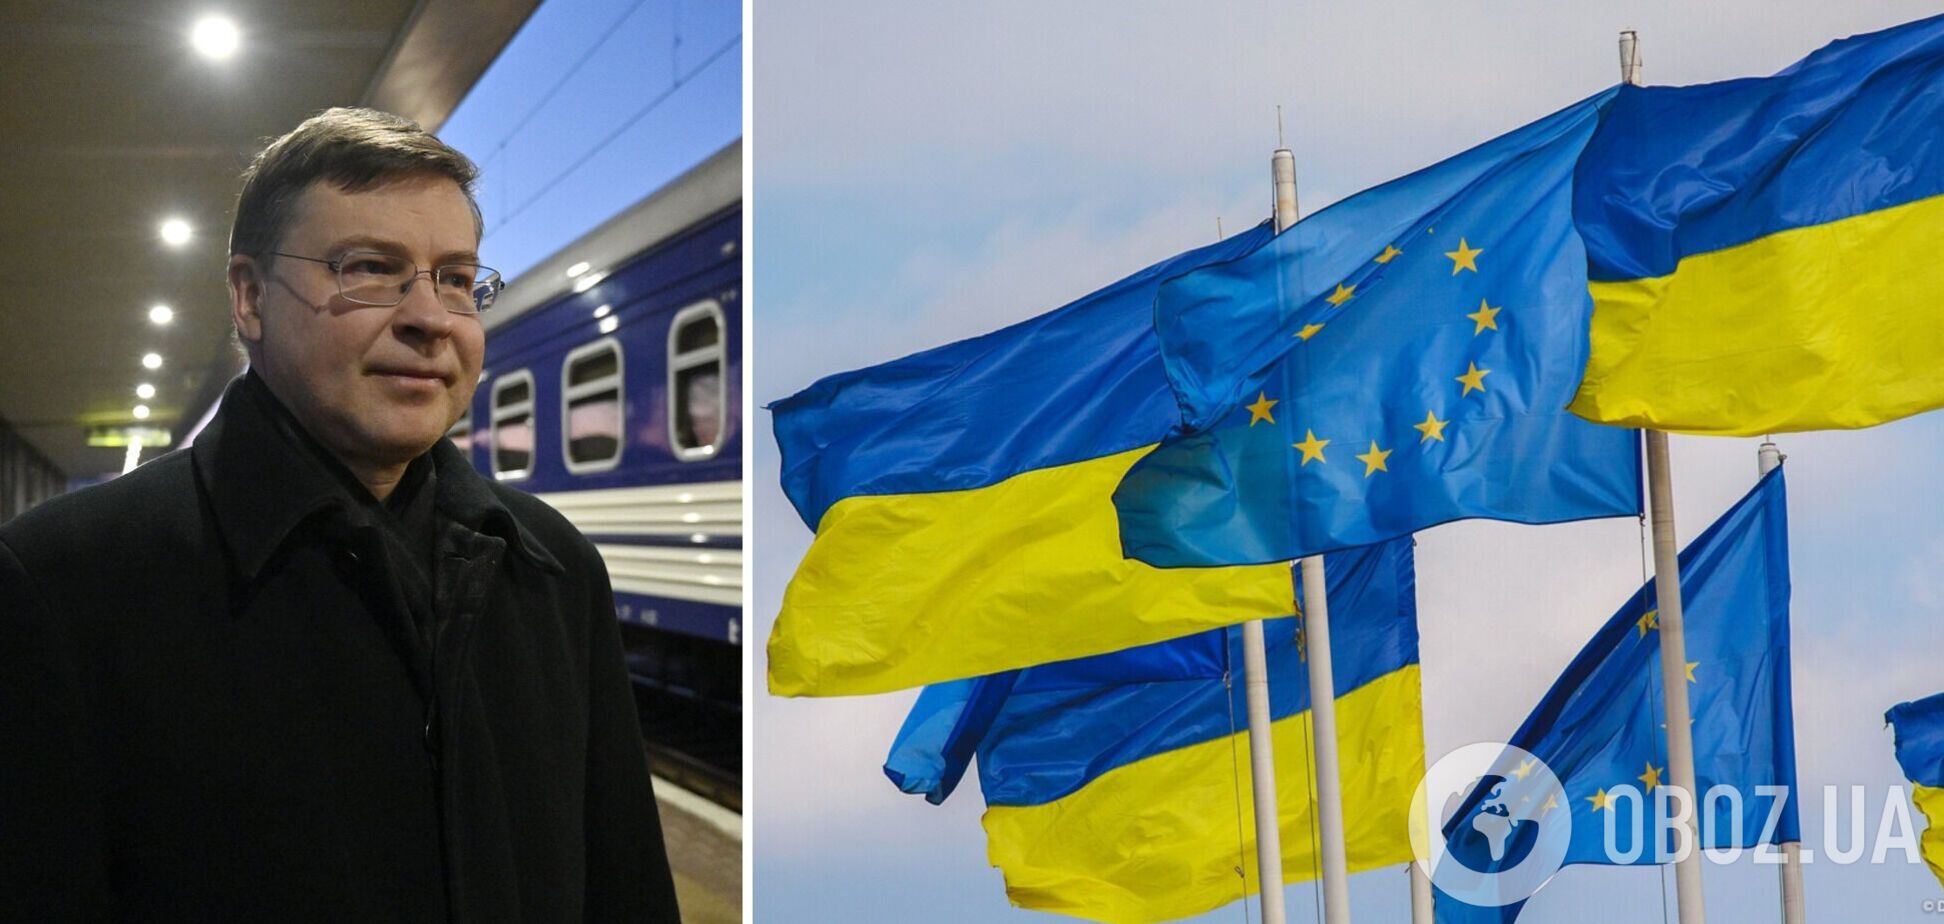 'Украина уже сделала свой четкий выбор': в Киев прибыл с визитом вице-президент Еврокомиссии